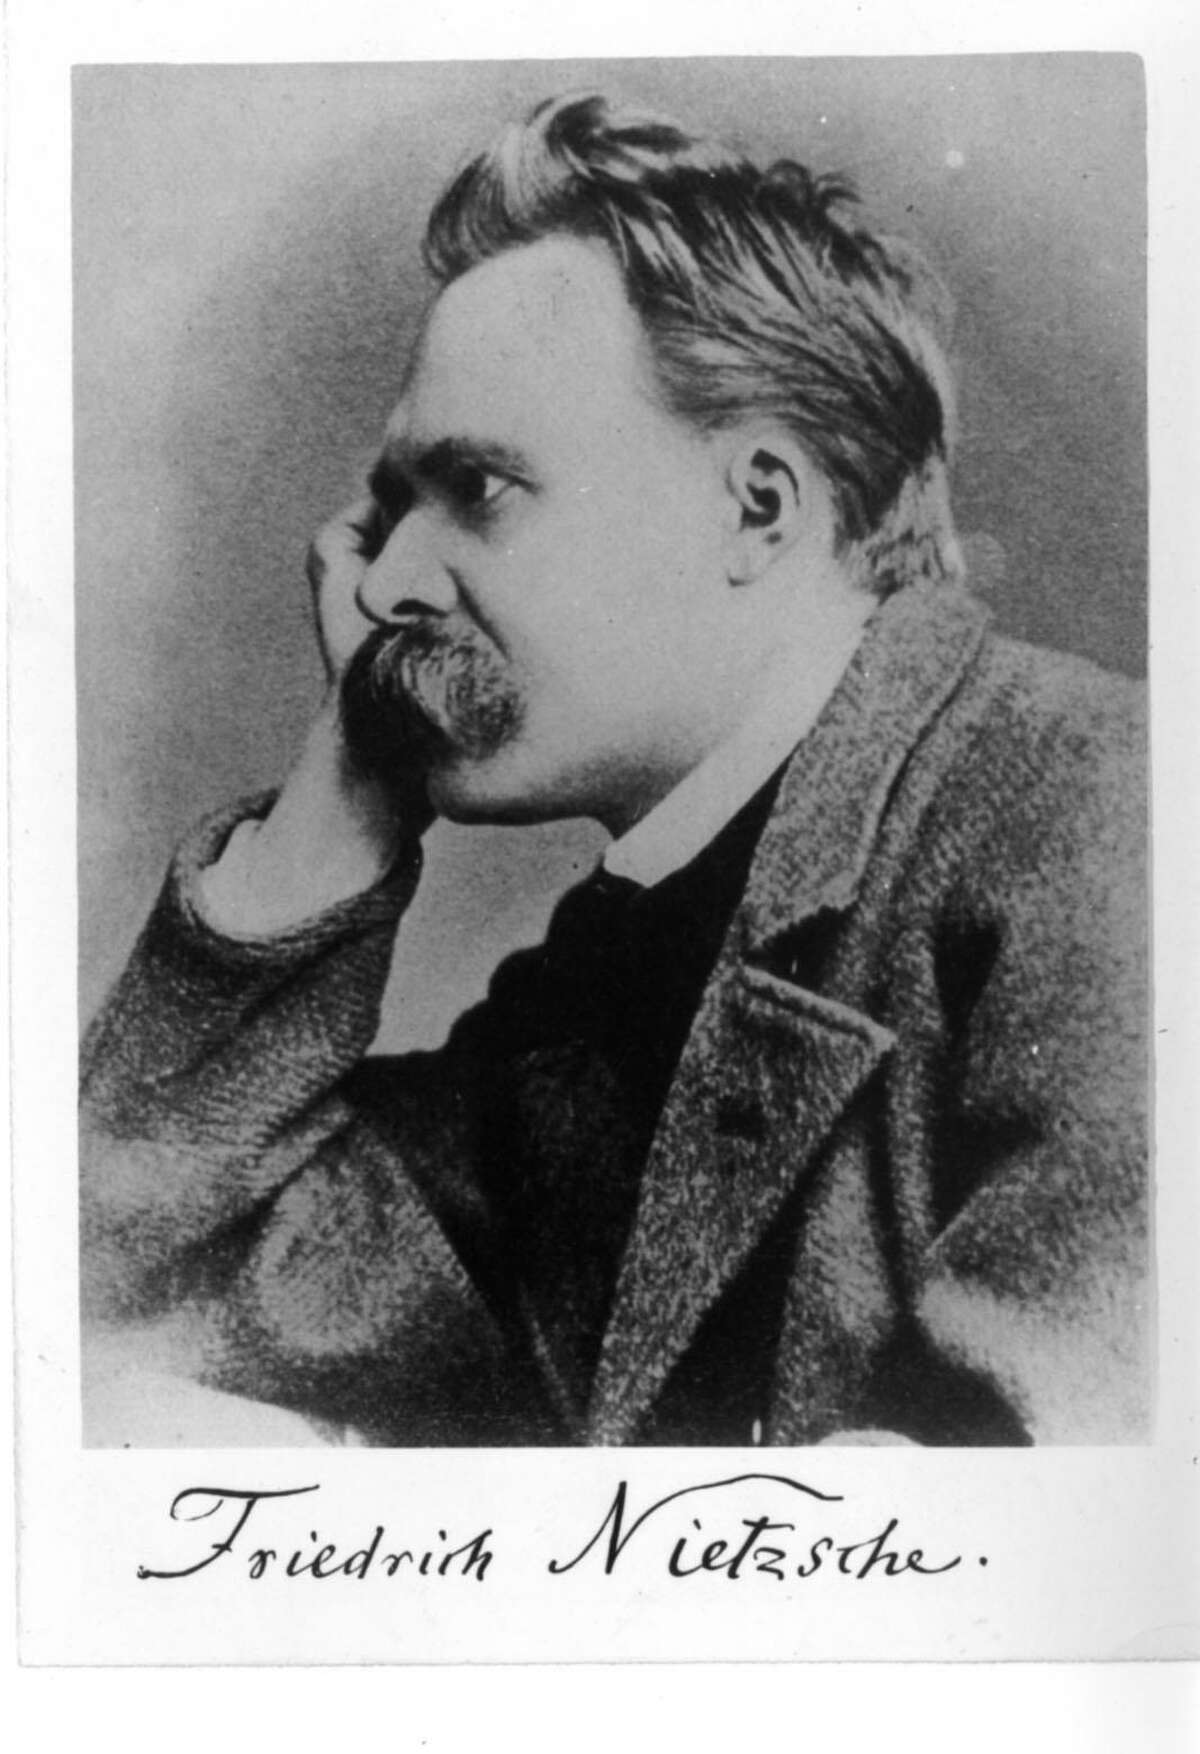 Friedrich Nietzsche was not the fascist many believe he was.